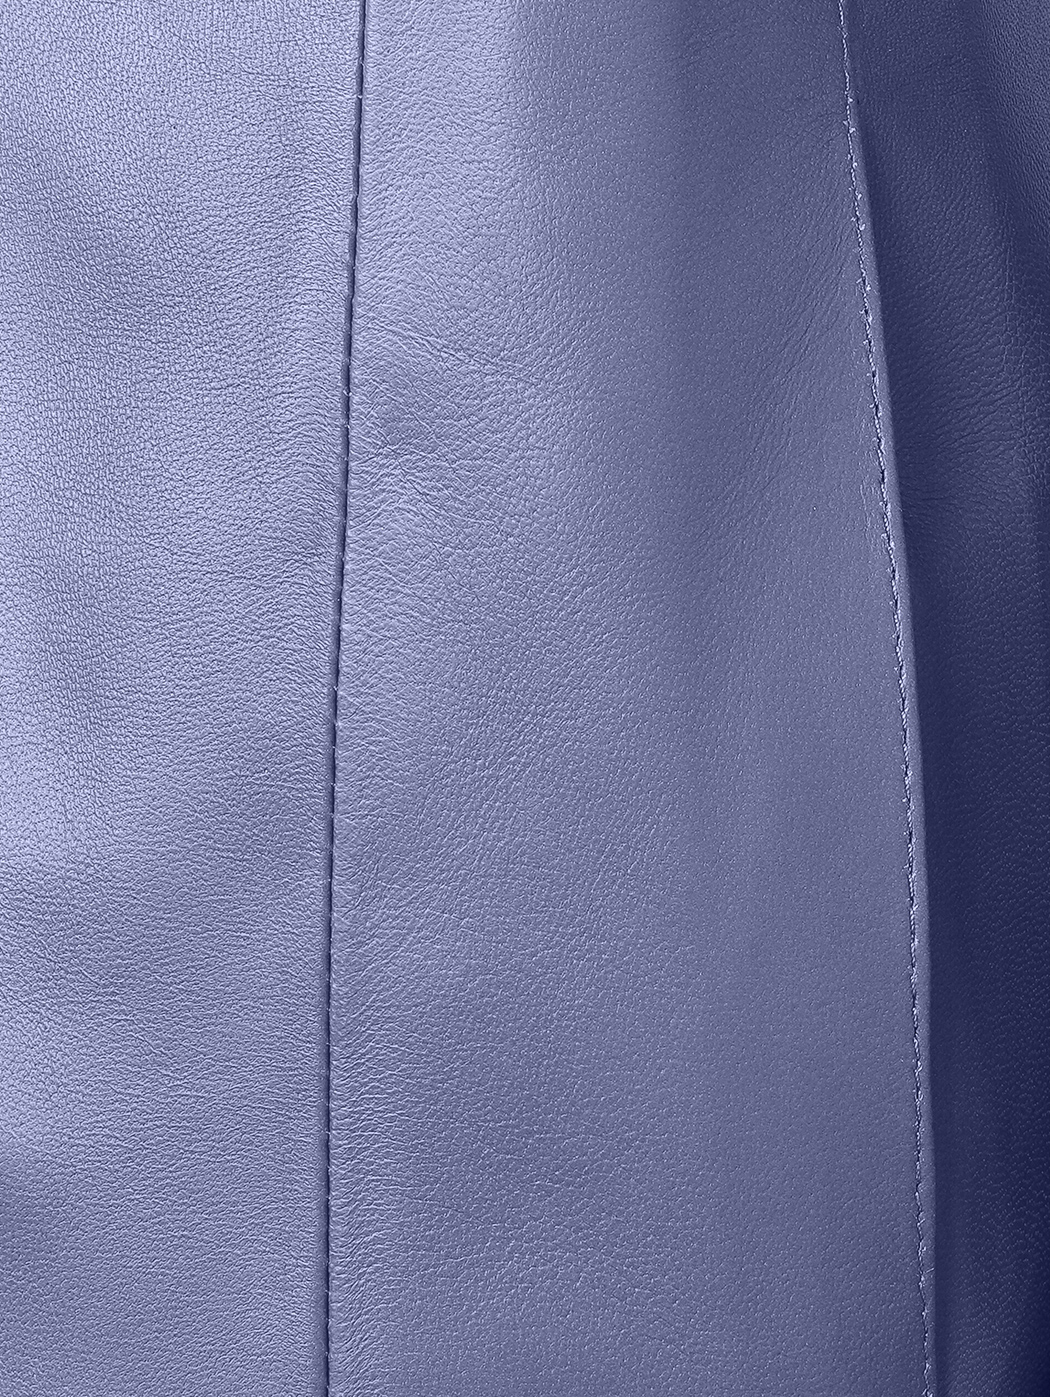 简约立领式短款修身羊皮夹克 蓝色